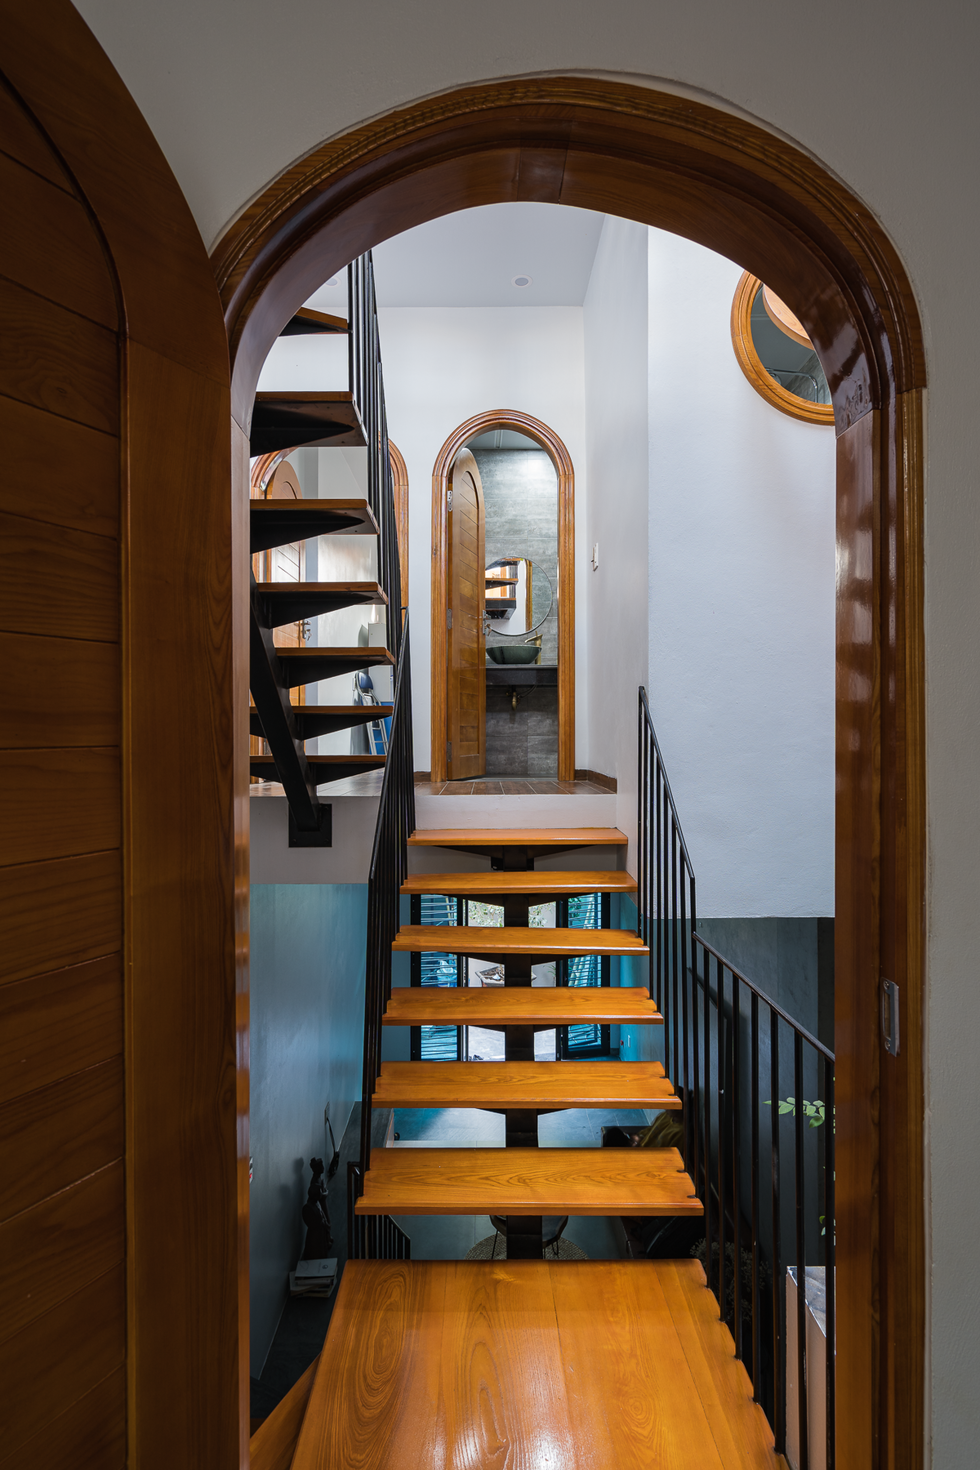 Trong nhà có nhiều chi tiết được thiết kế phá cách, như dạng cửa vòm và những ô cửa tròn giúp không gian thêm mềm mại và ấn tượng.